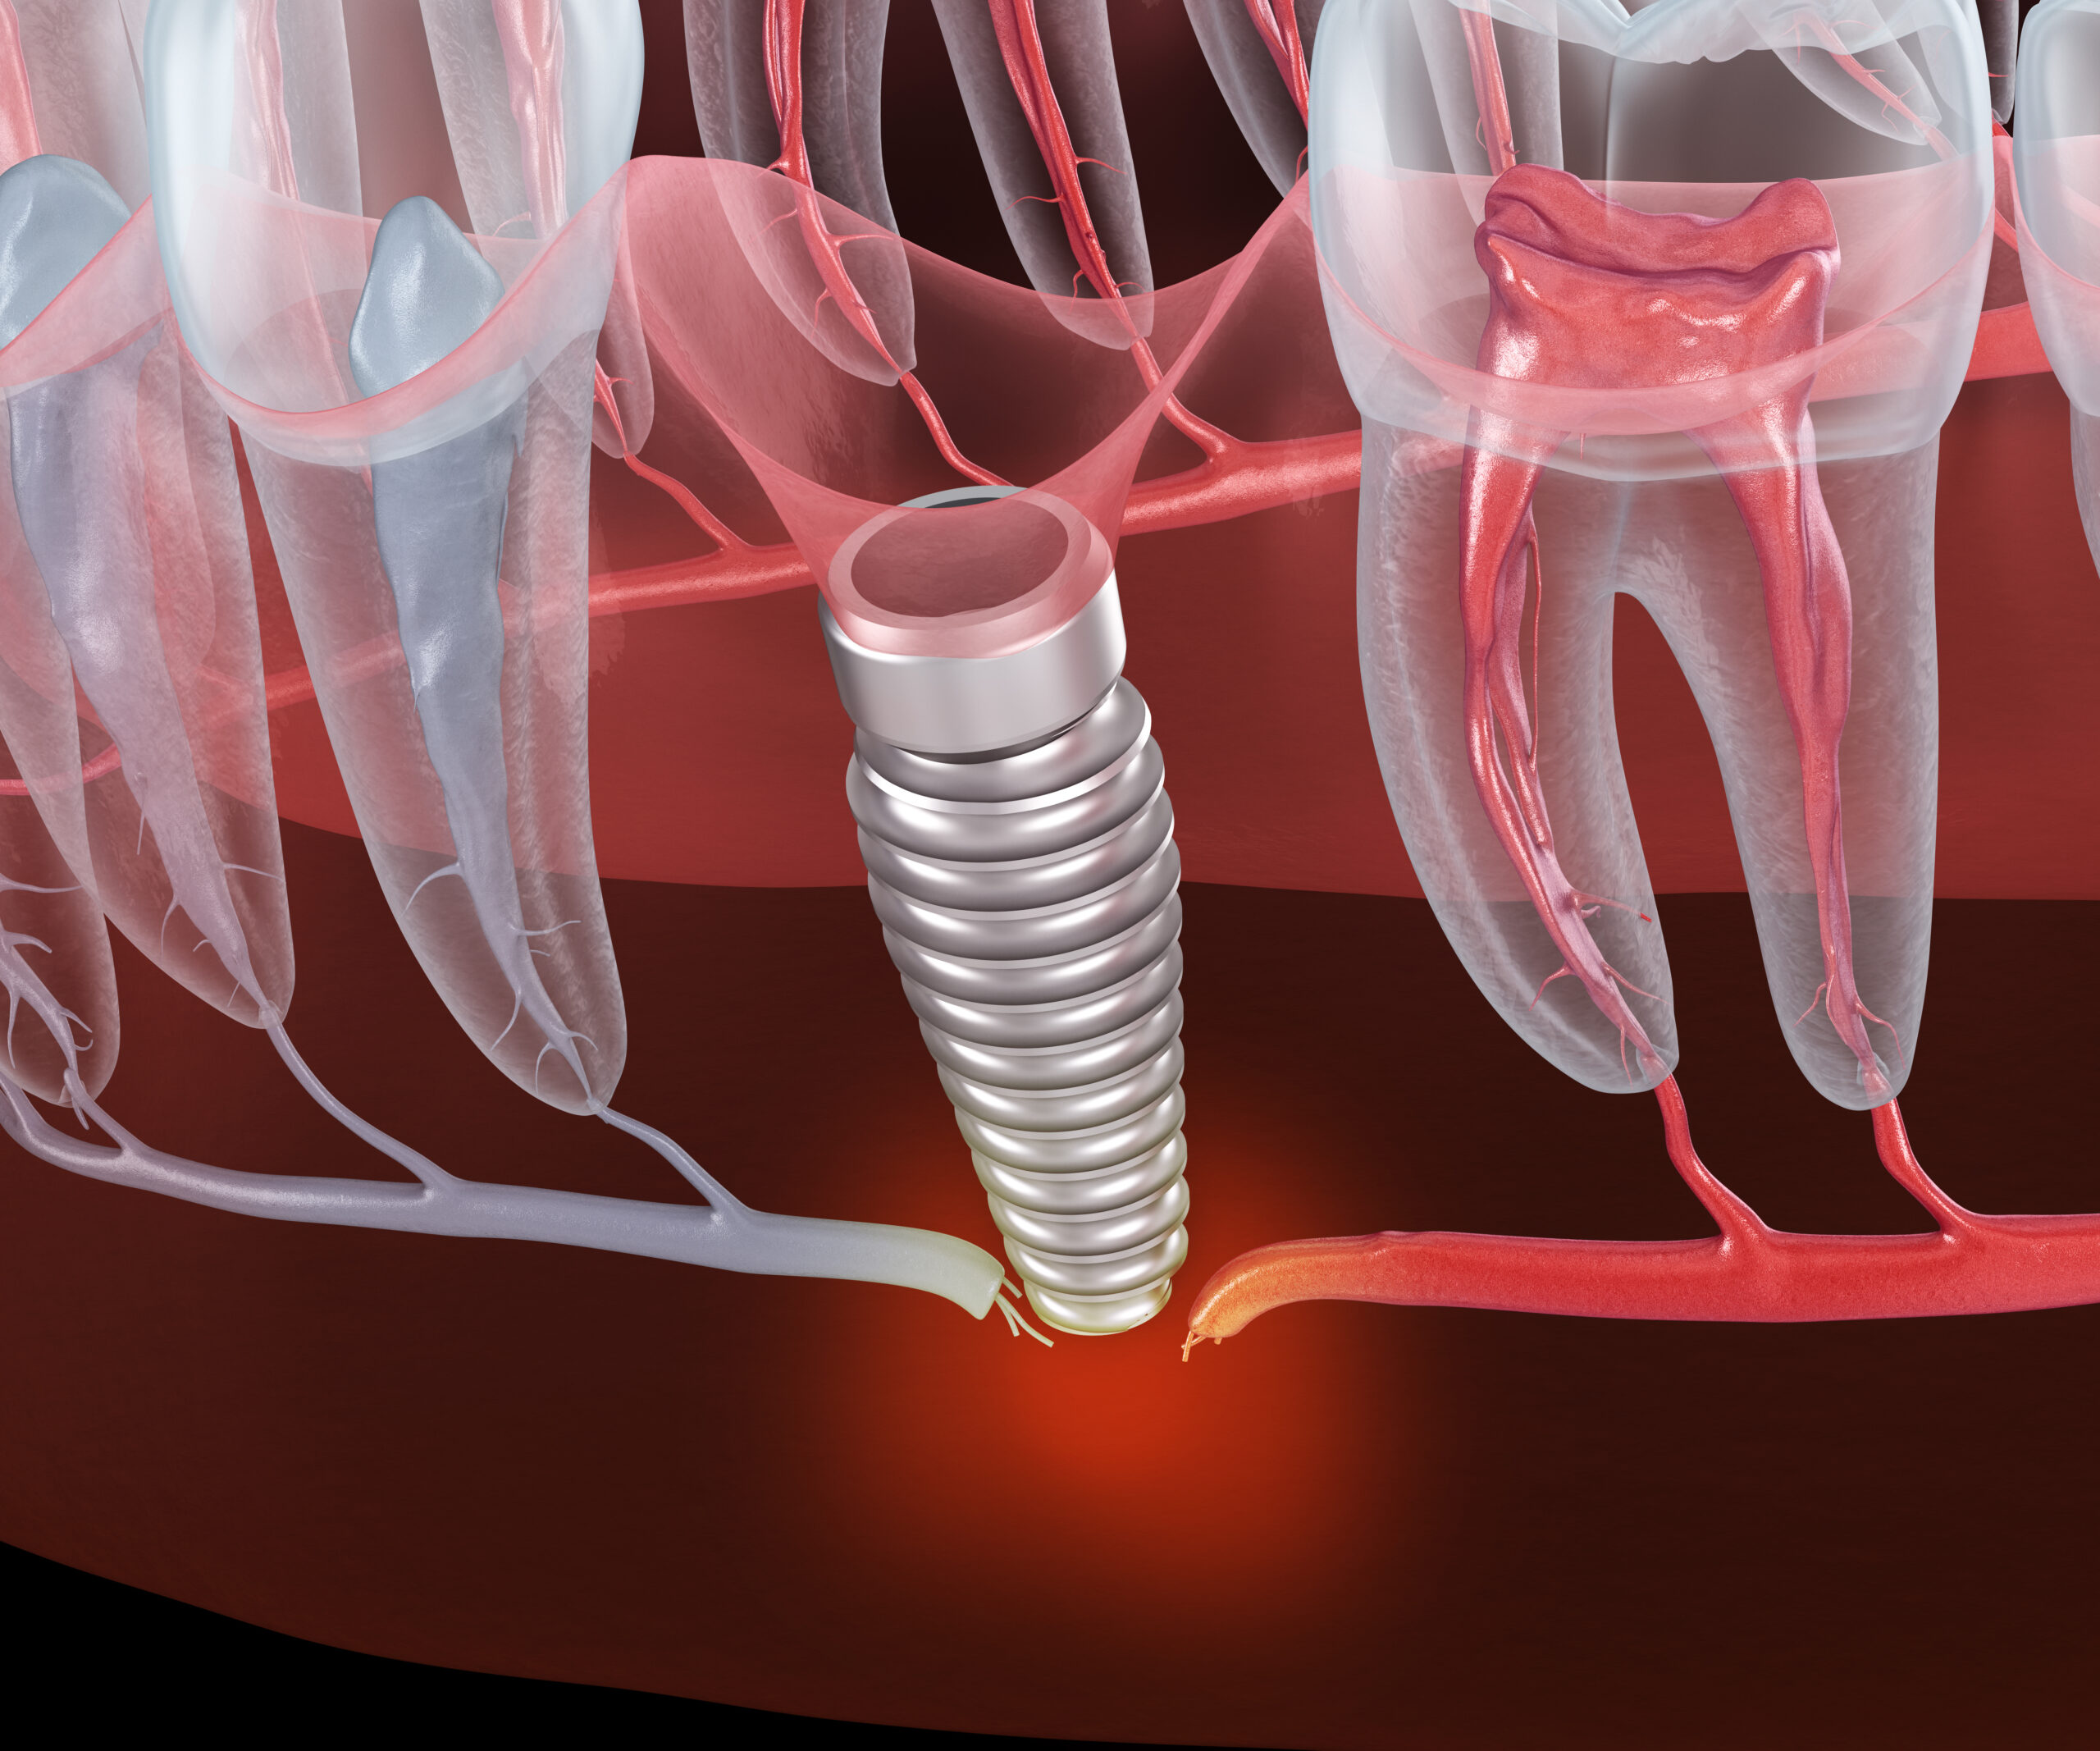 Result of unsuccessful dental implantation - nerve break. Medically accurate dental 3D illustration.